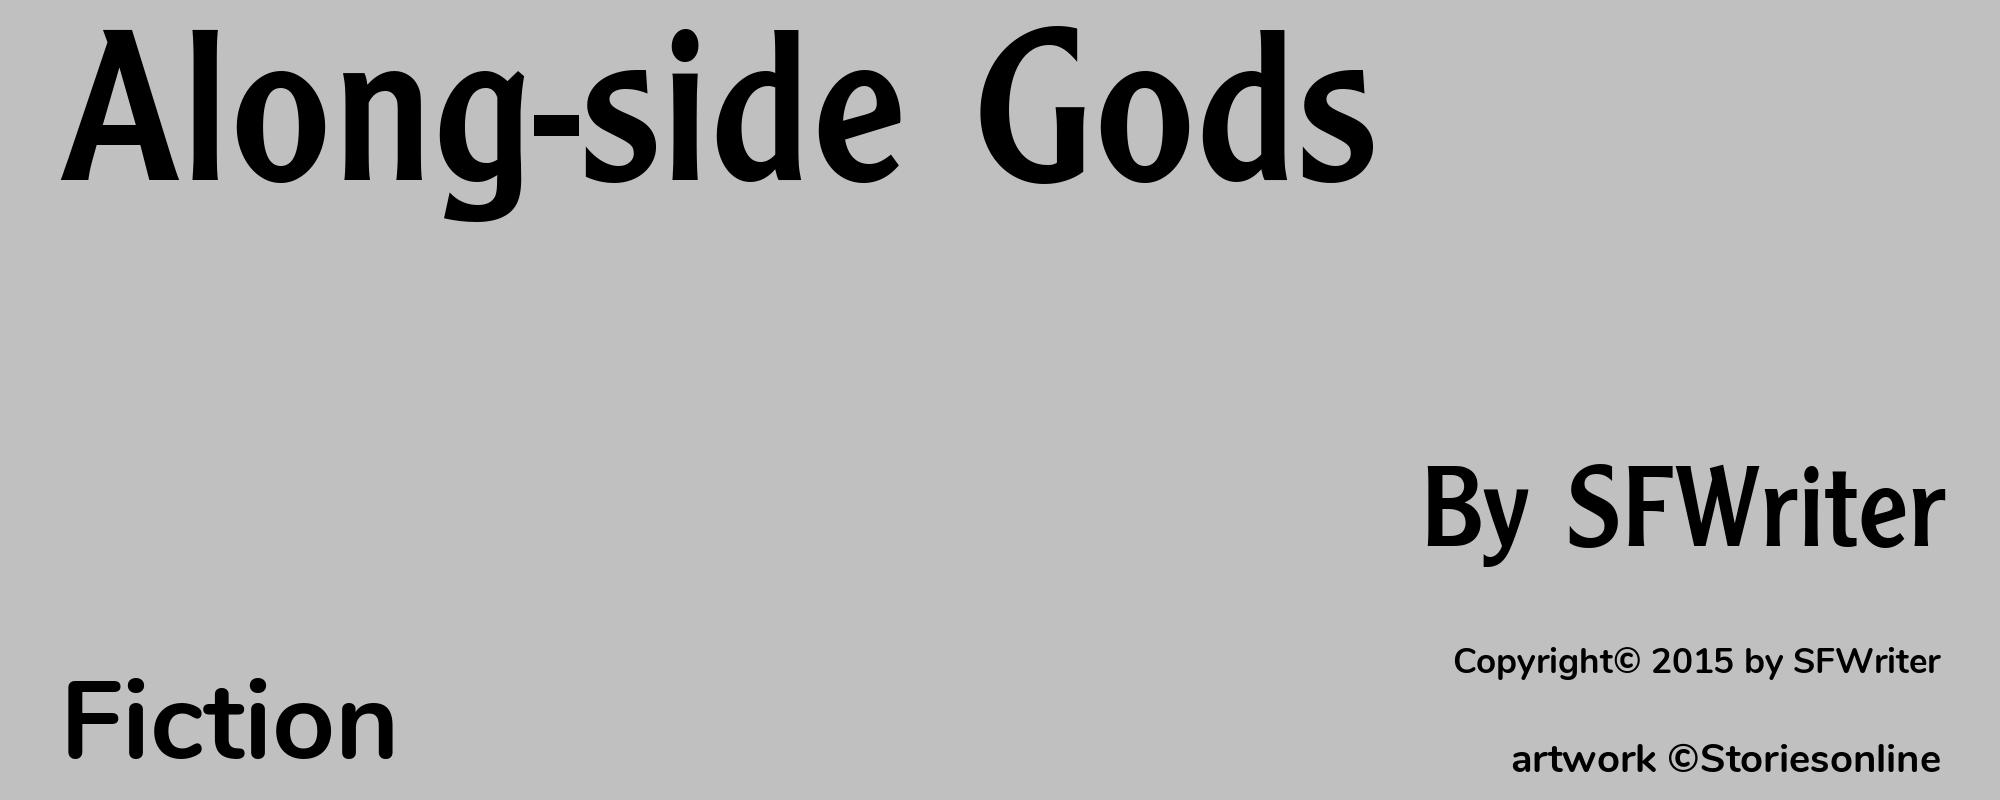 Along-side Gods - Cover